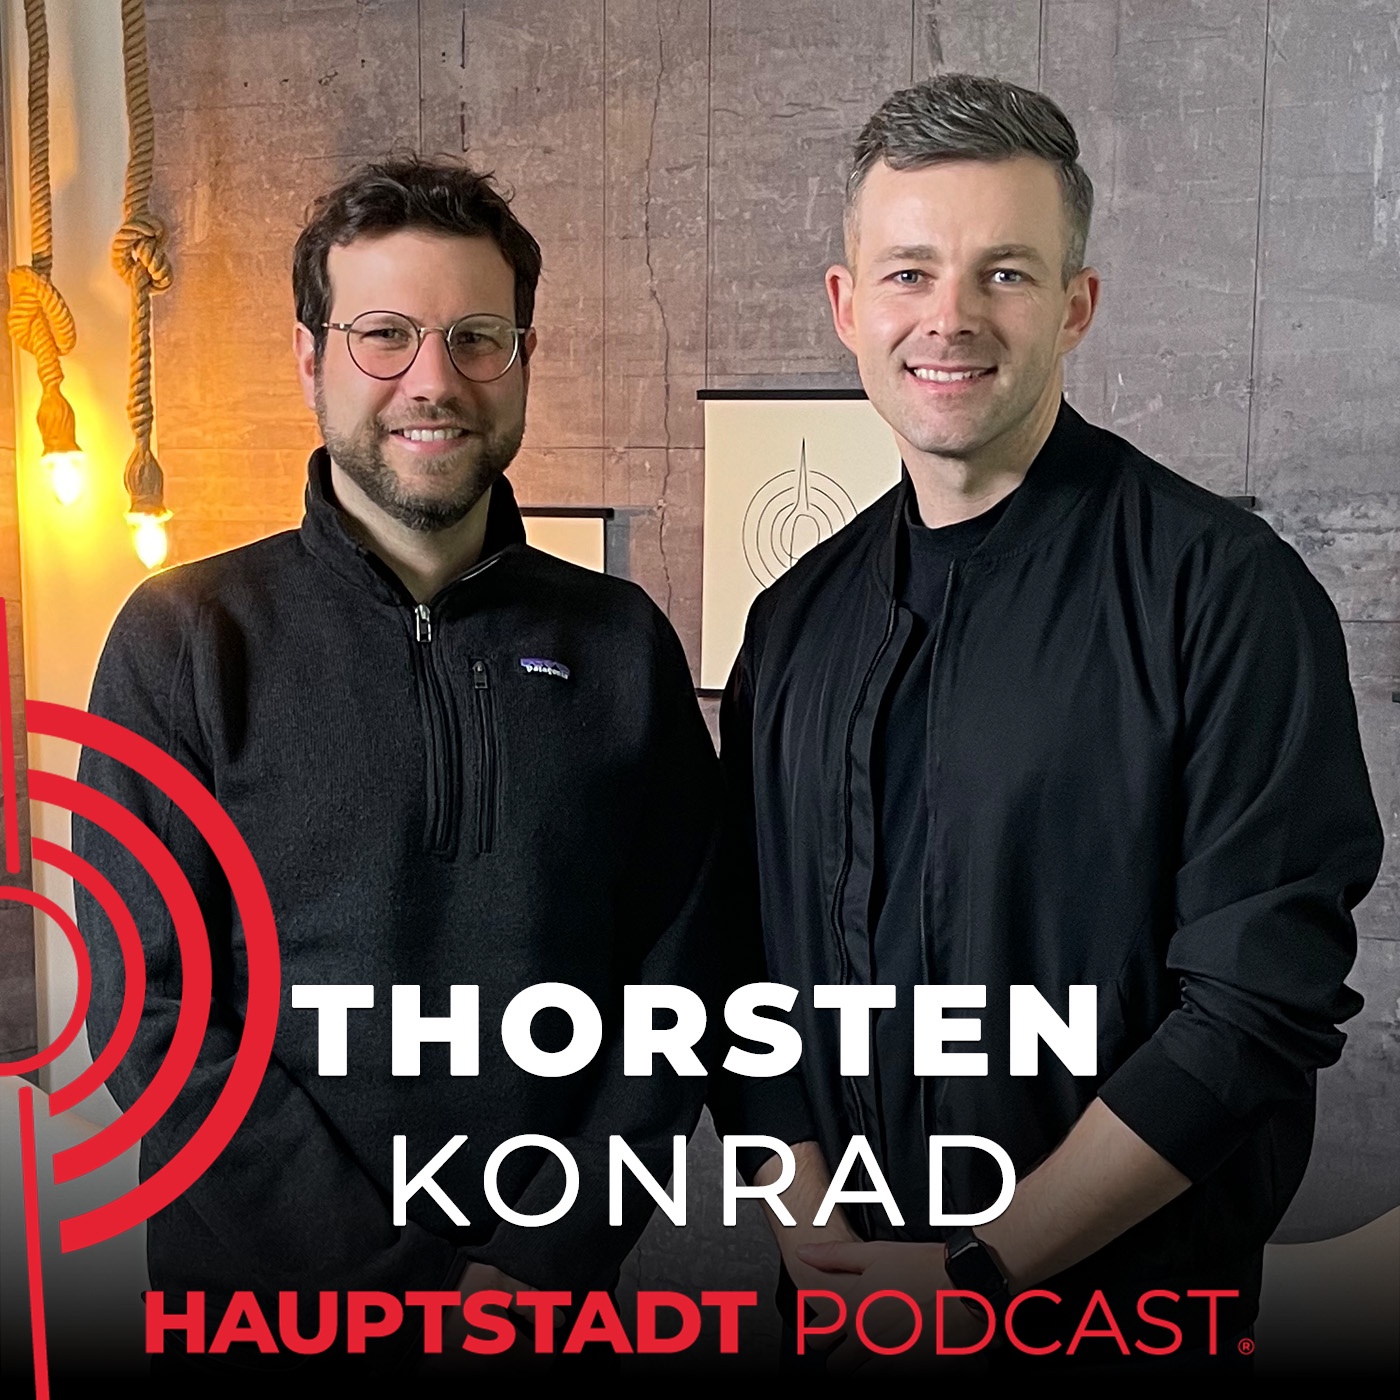 Thorsten Konrad: Gründer von cappetize.me